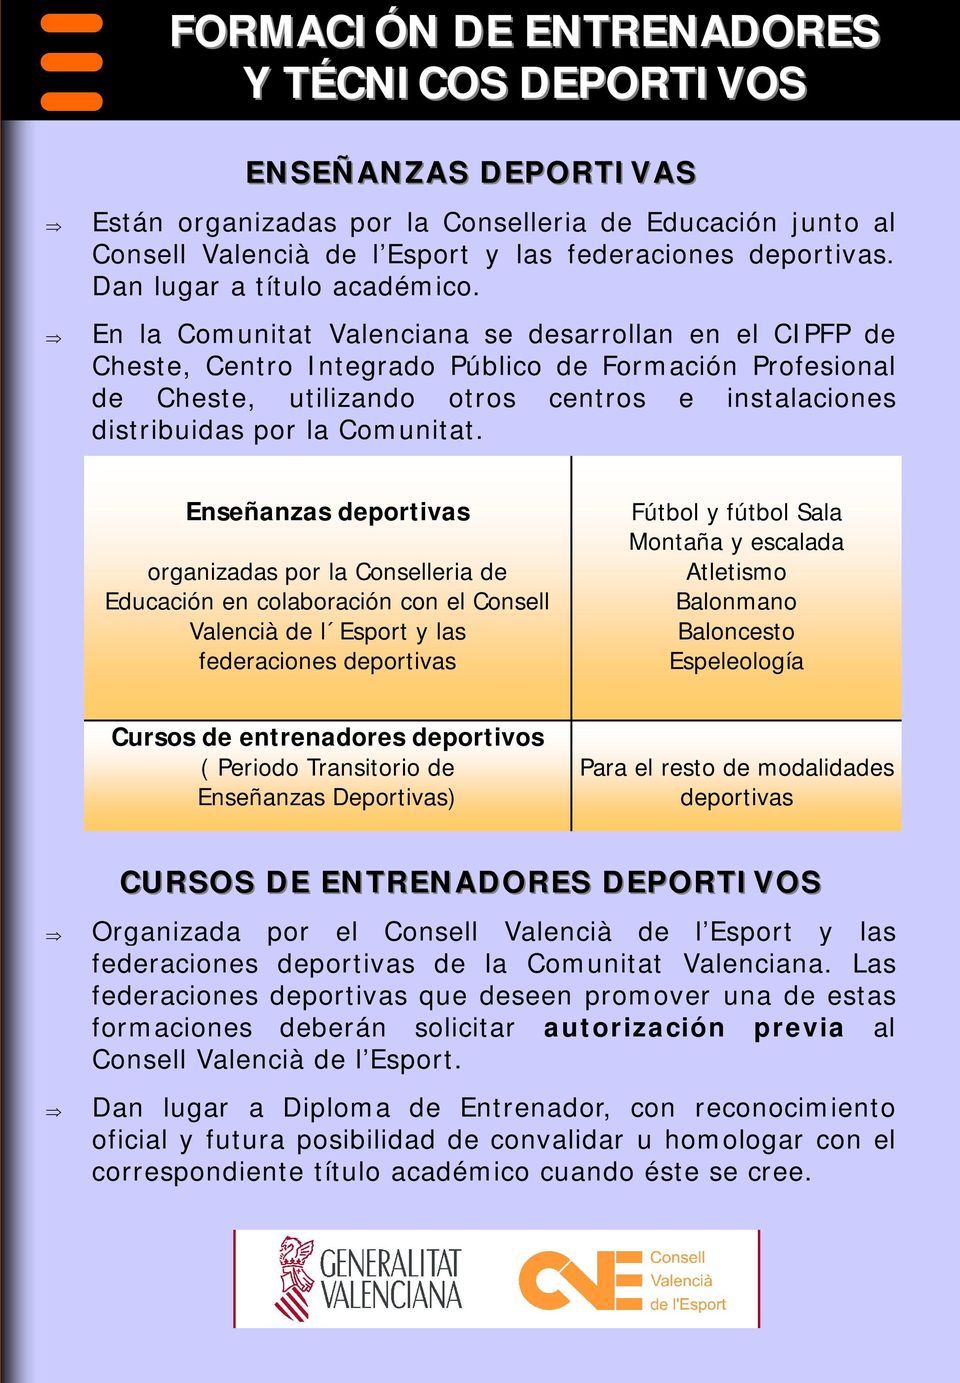 En la Comunitat Valenciana se desarrollan en el CIPFP de Cheste, Centro Integrado Público de Formación Profesional de Cheste, utilizando otros centros e instalaciones distribuidas por la Comunitat.